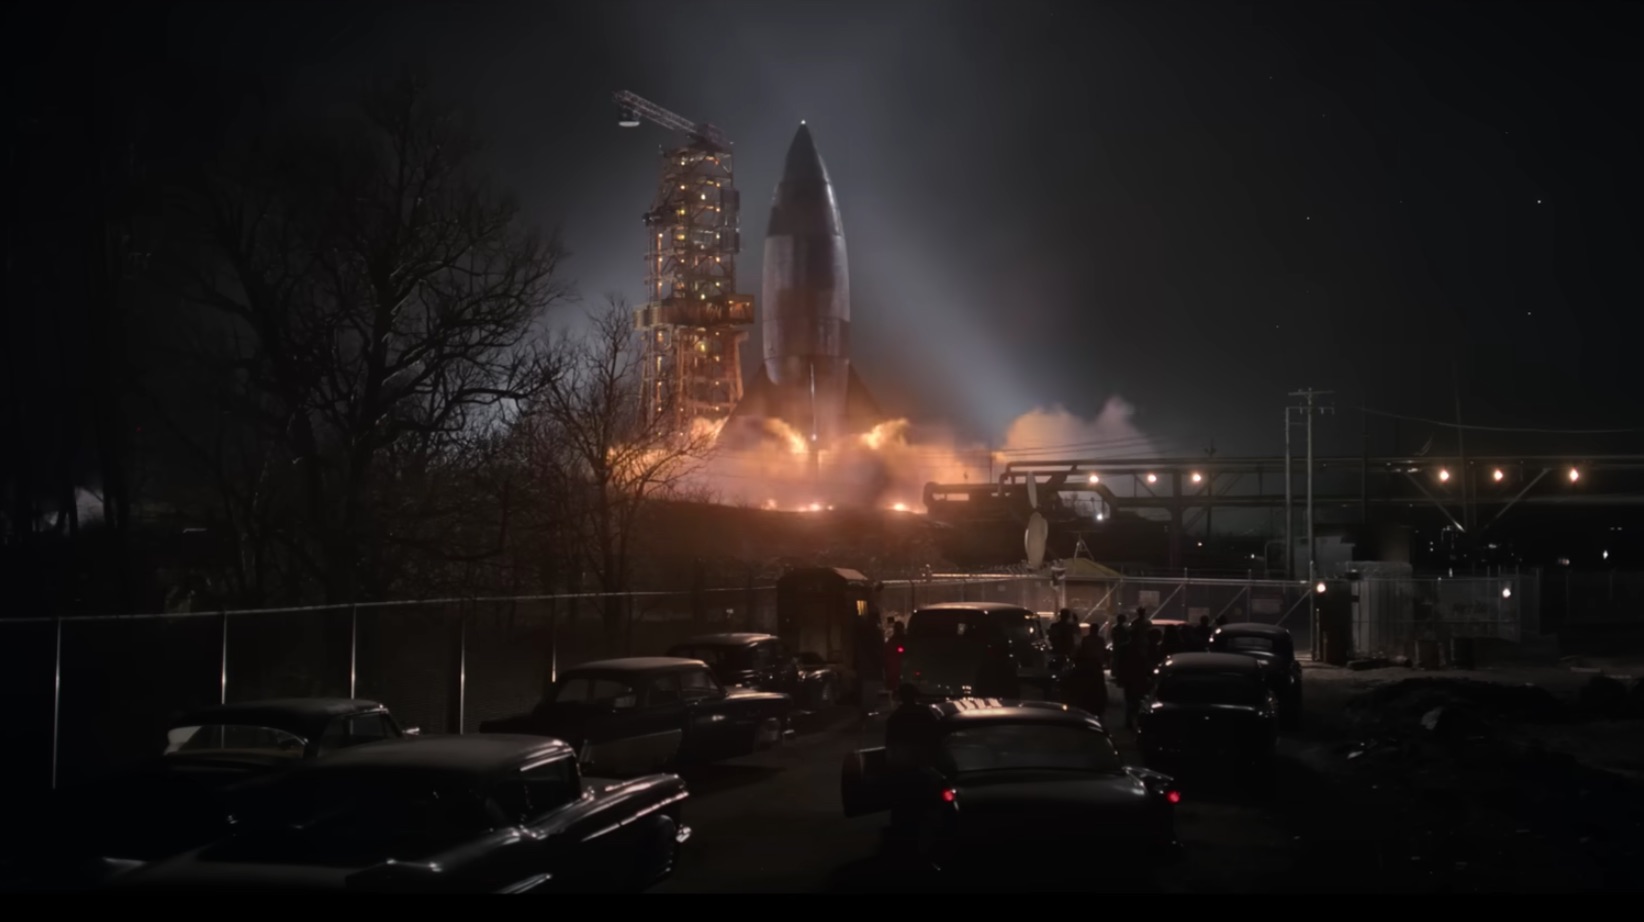 Un cohete se lanza a la noche rodeado de decenas de coches de los años 50